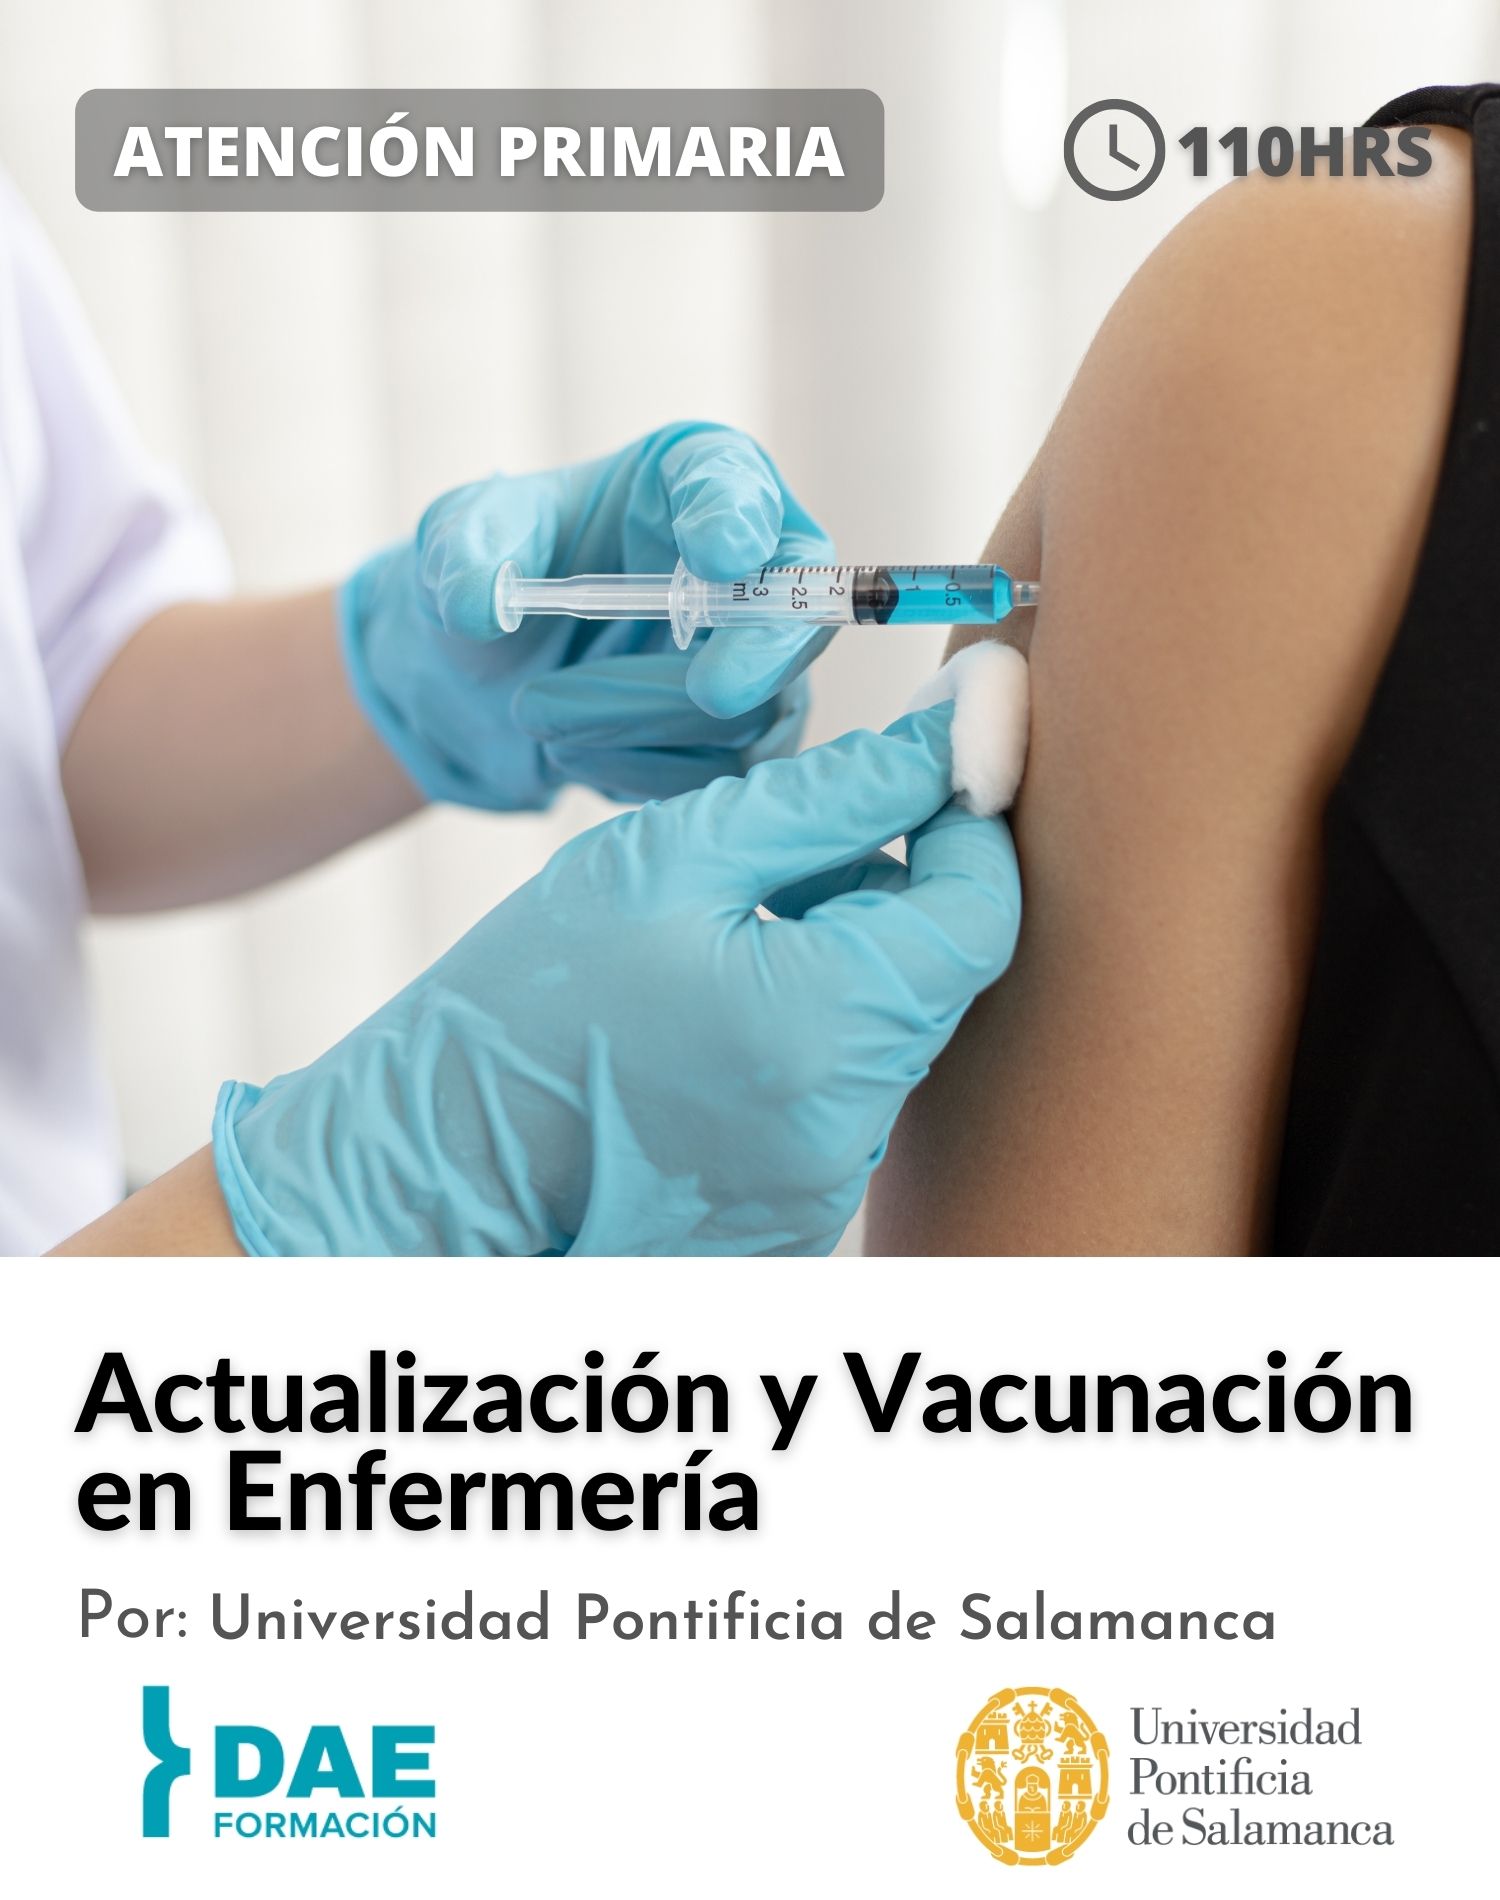  Curso de Actualización y Vacunación en Enfermería ( 110 hrs) 2